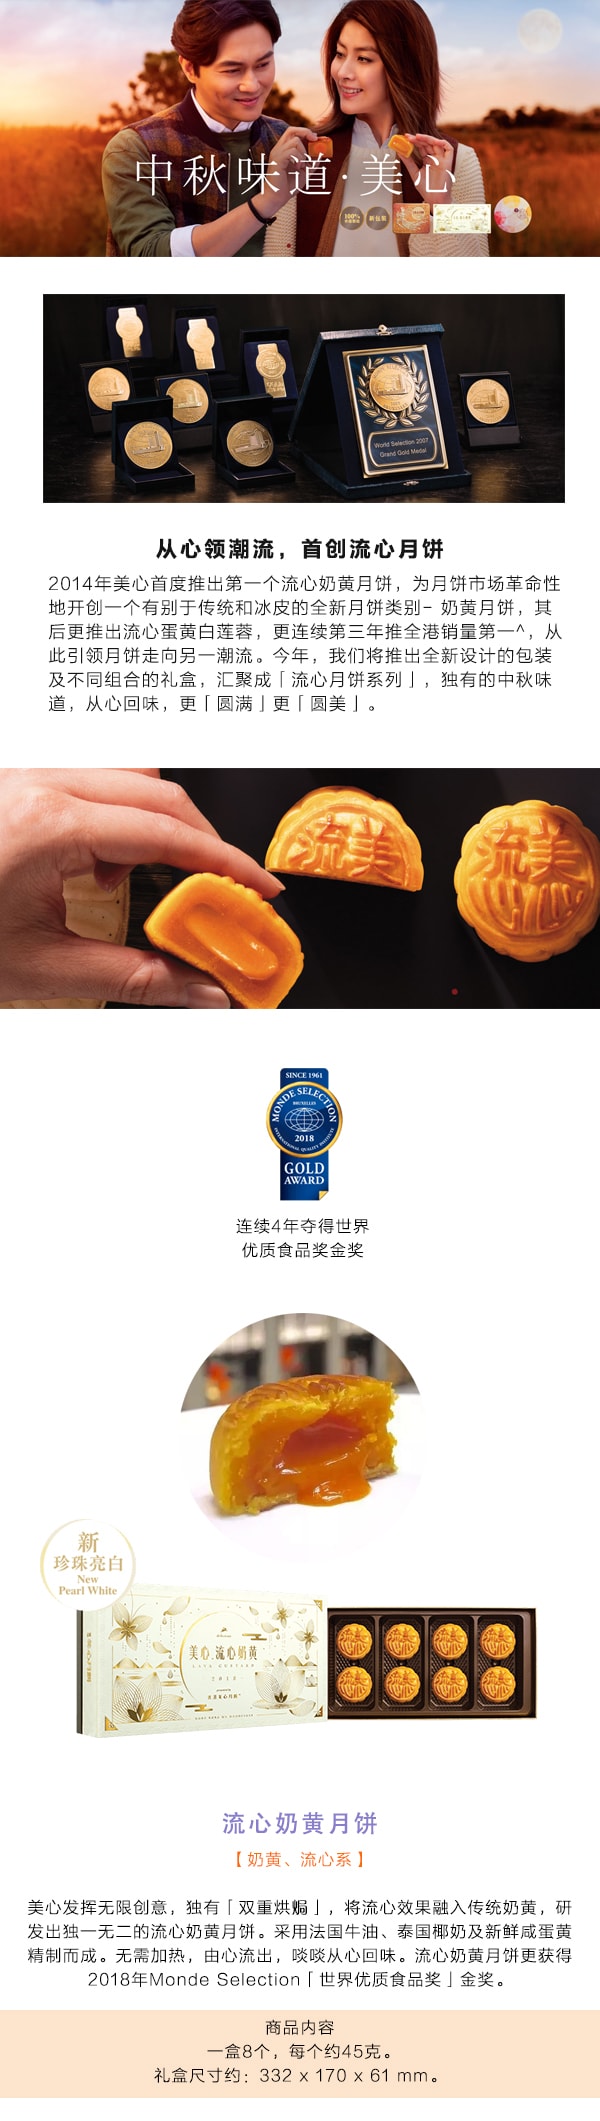 【全美最低价】[台湾直邮] HONG KNOG MX香港美心 流心奶黄月饼 8枚入